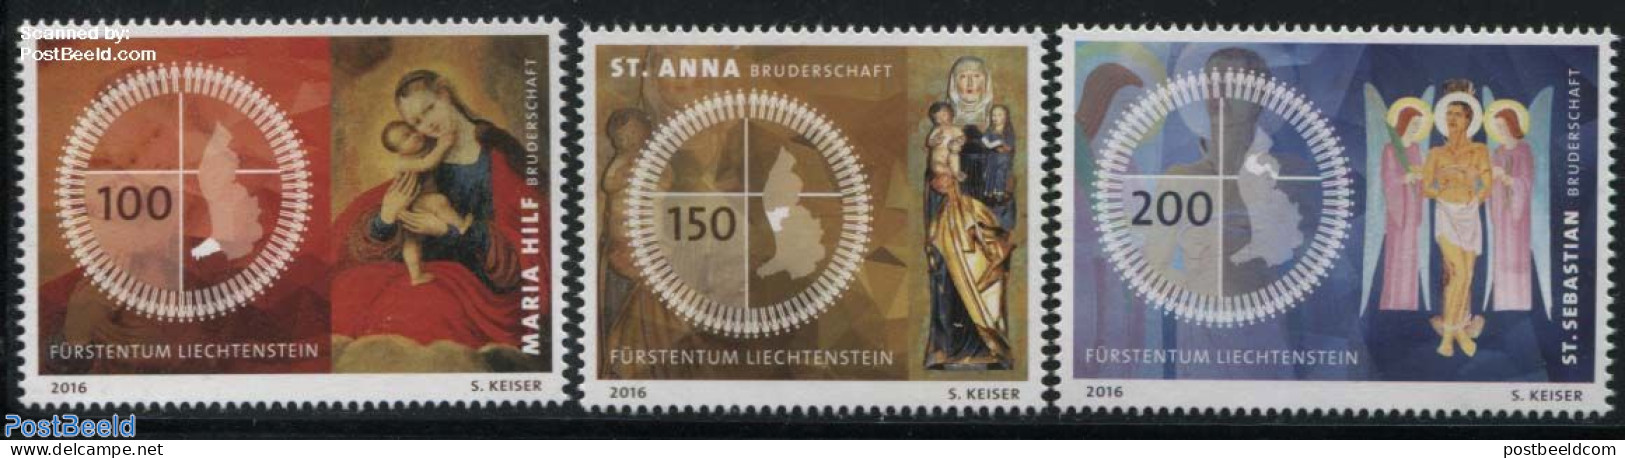 Liechtenstein 2016 Fraternities In Liechtenstein 3v, Mint NH, Religion - Various - Religion - Maps - Nuevos